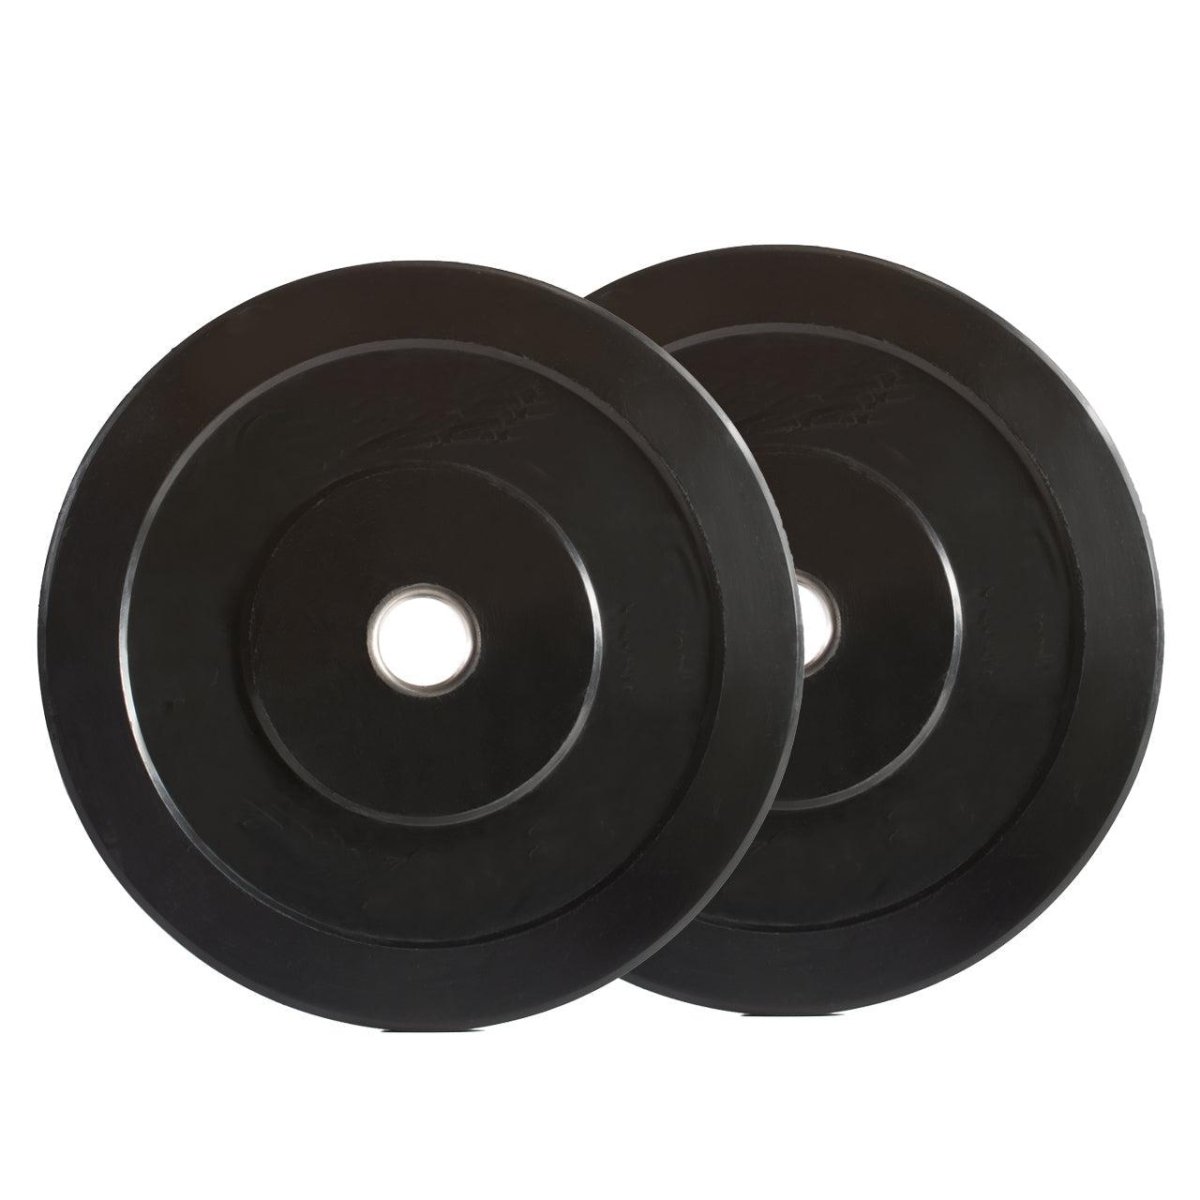 Deluxe Black Bumper Plate - 25 kg pair-Bumper Plates-Pro Sports